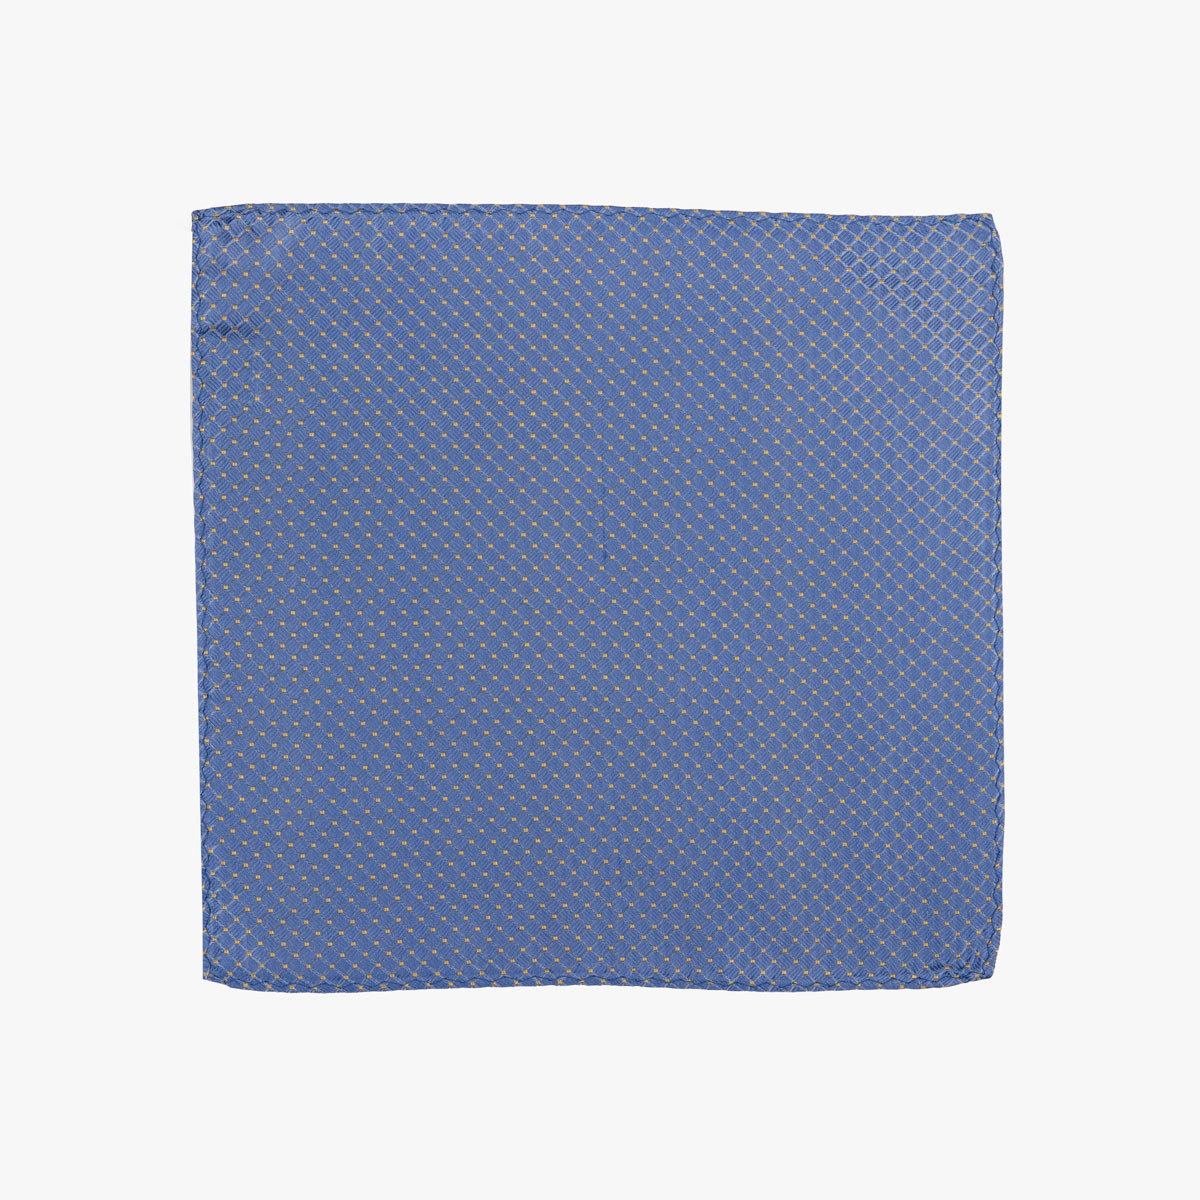 Einstecktuch aus Seide in hellblau mit Checker-Pattern